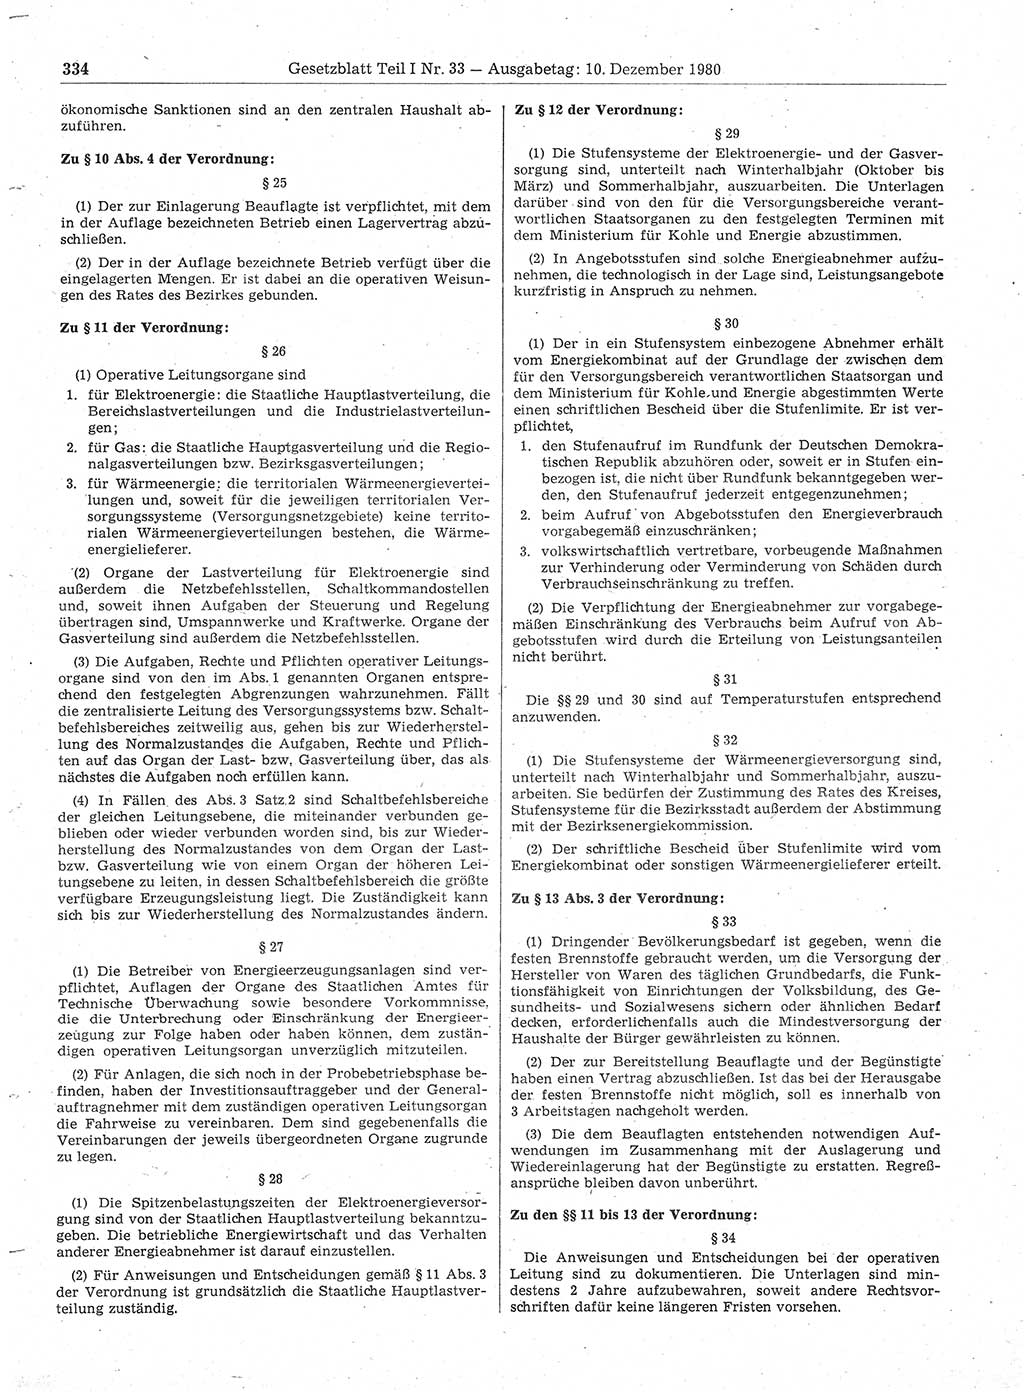 Gesetzblatt (GBl.) der Deutschen Demokratischen Republik (DDR) Teil Ⅰ 1980, Seite 334 (GBl. DDR Ⅰ 1980, S. 334)